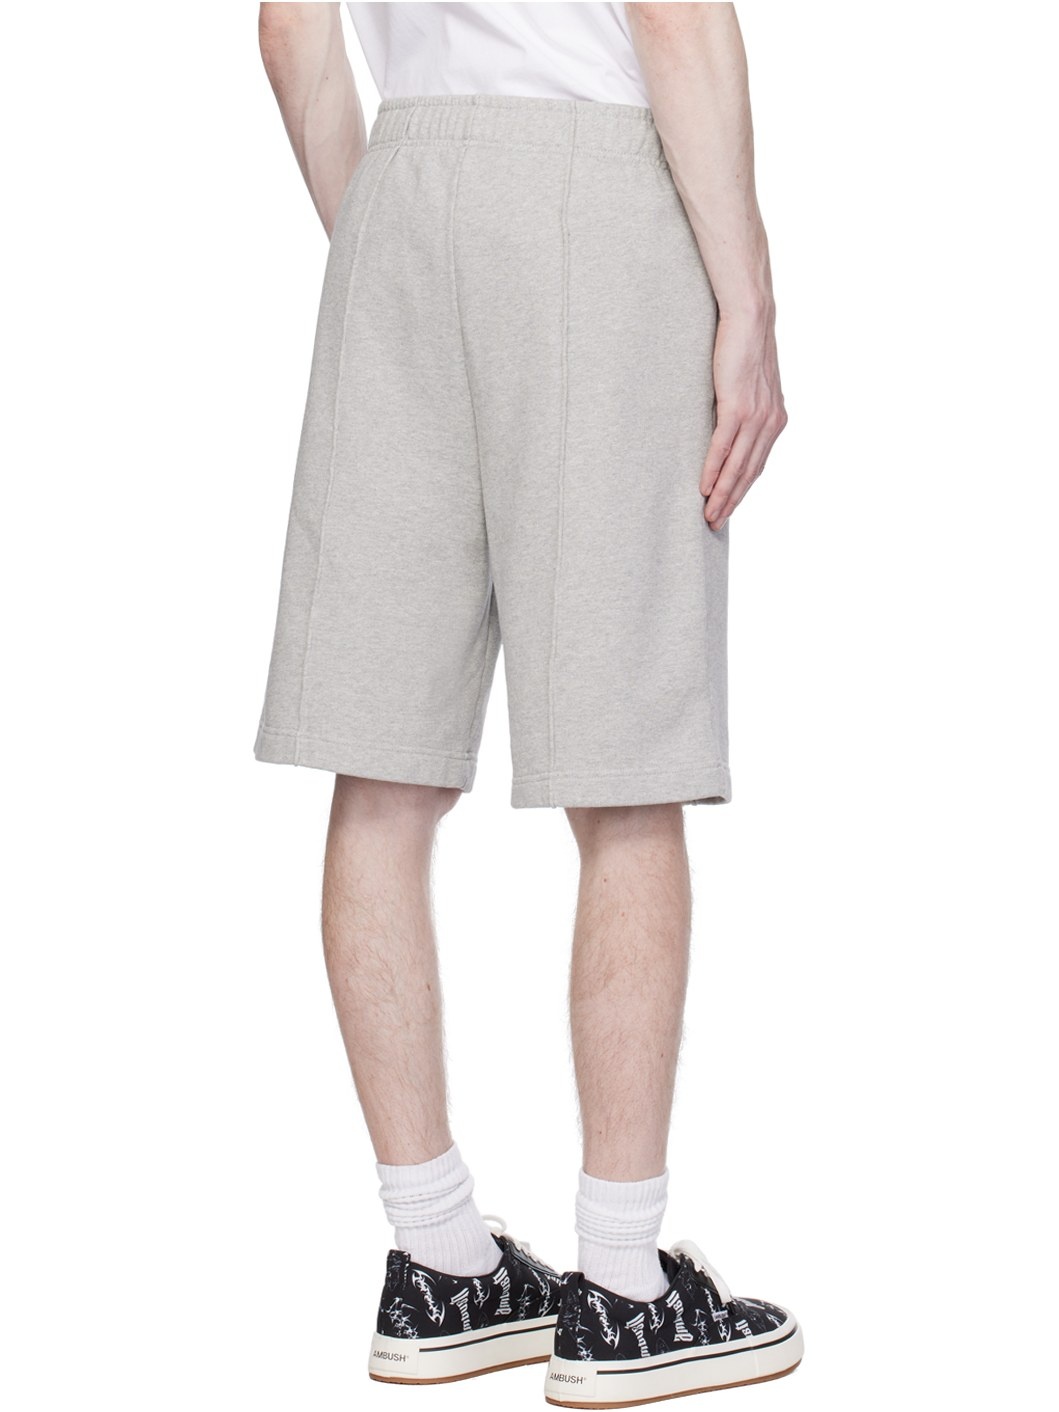 Gray Pinched Seam Shorts - 3